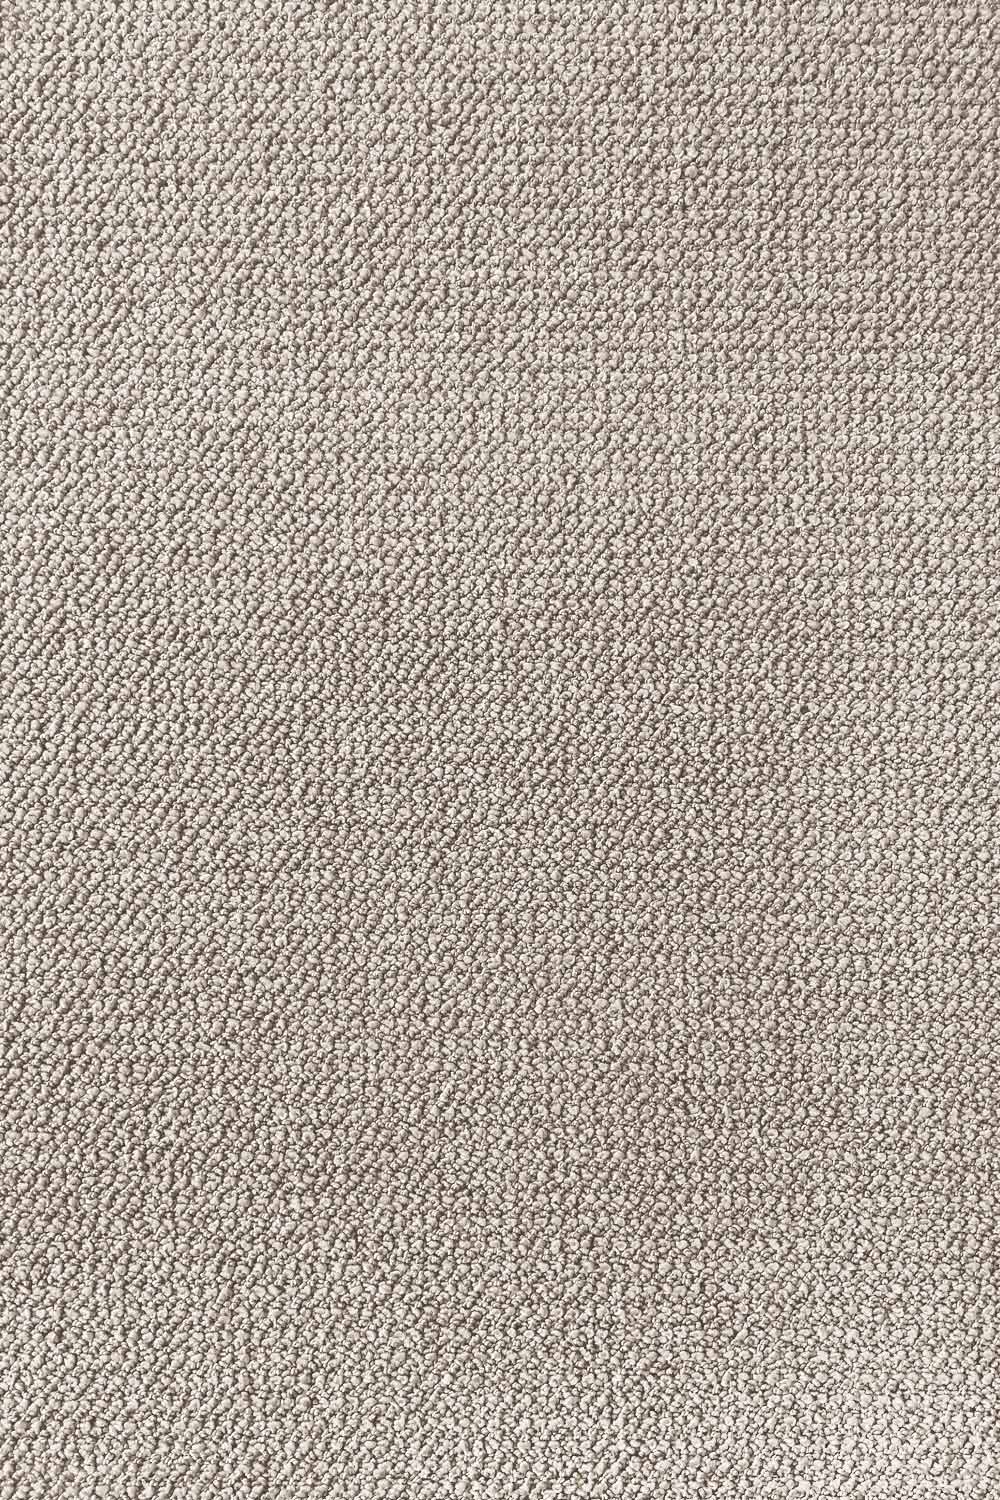 Metrážny koberec Corvino 32 400 cm